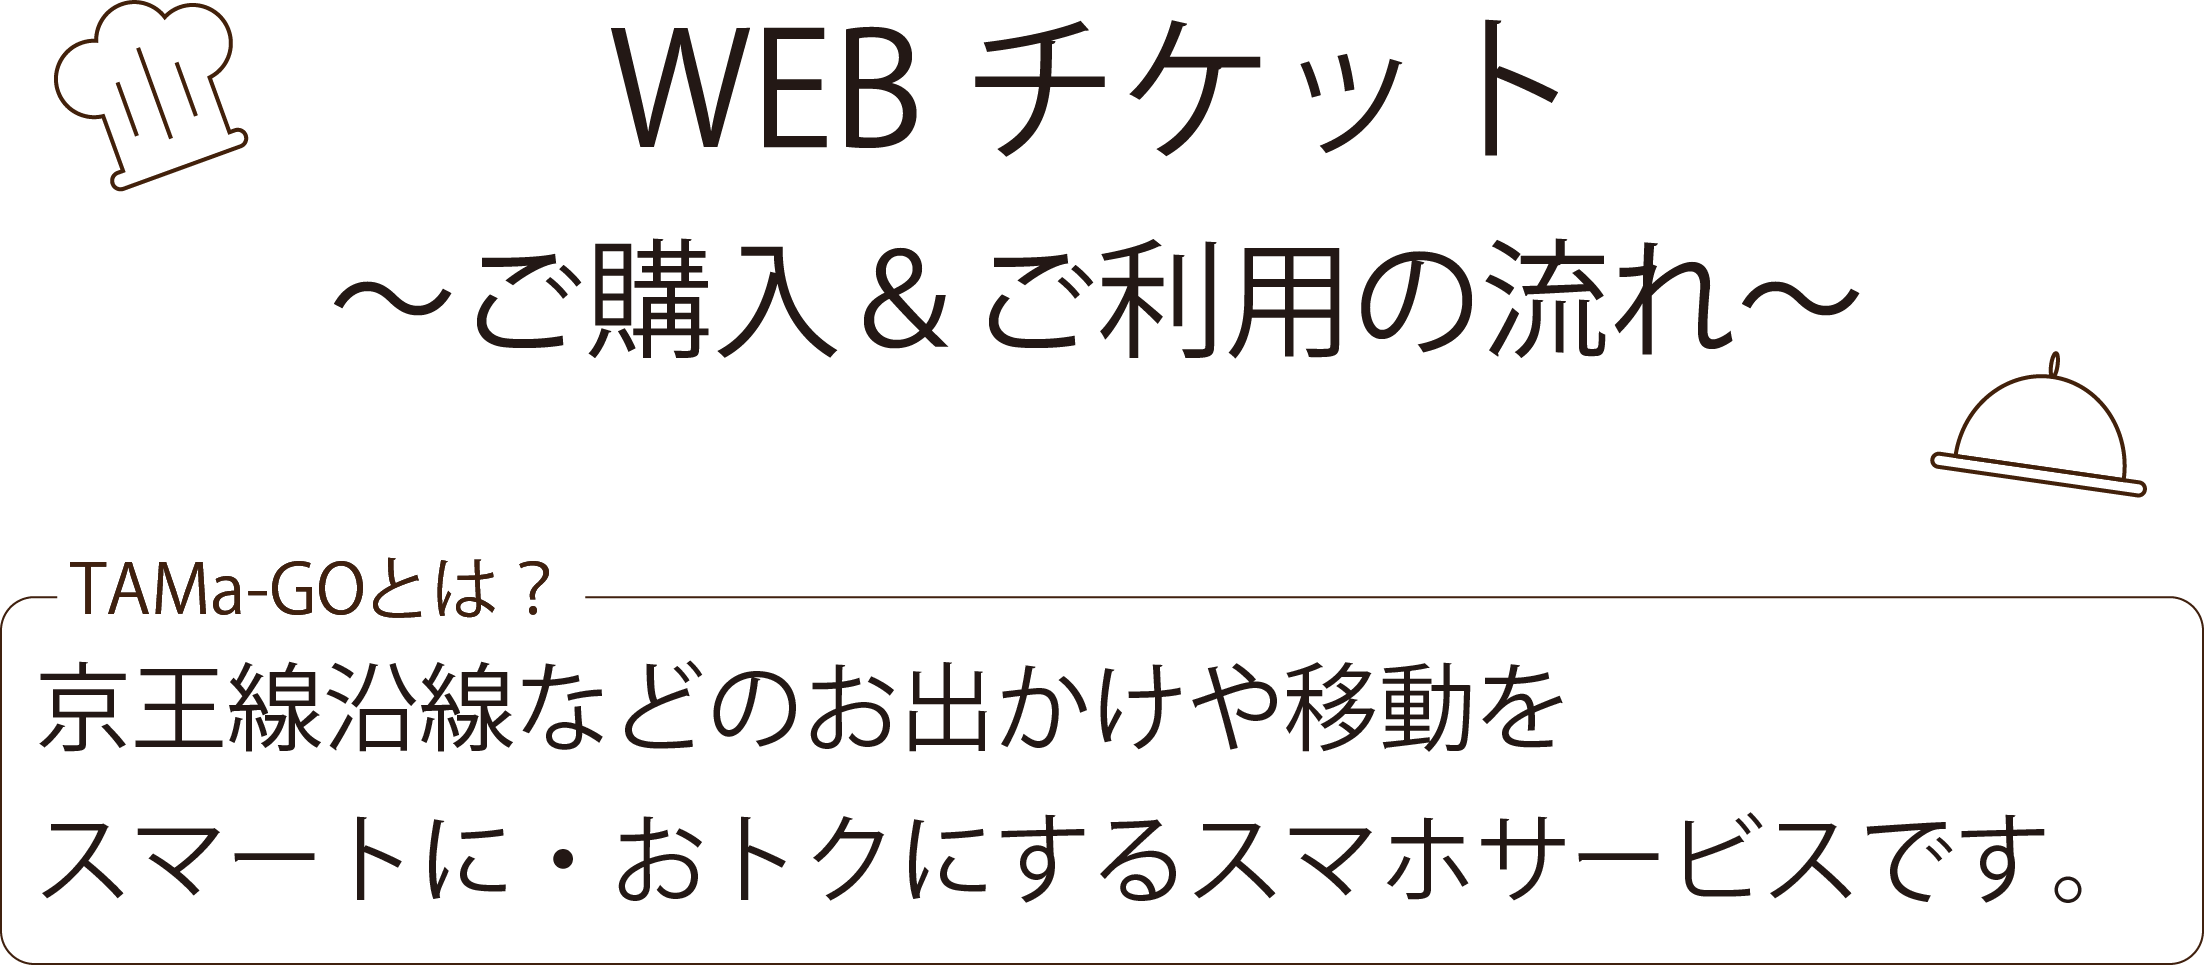 WEBチケットご購入＆ご利用の流れ TAMa-GOとは？京王線沿線などのお出かけや移動をスマートに・おトクにするスマホサービスです。